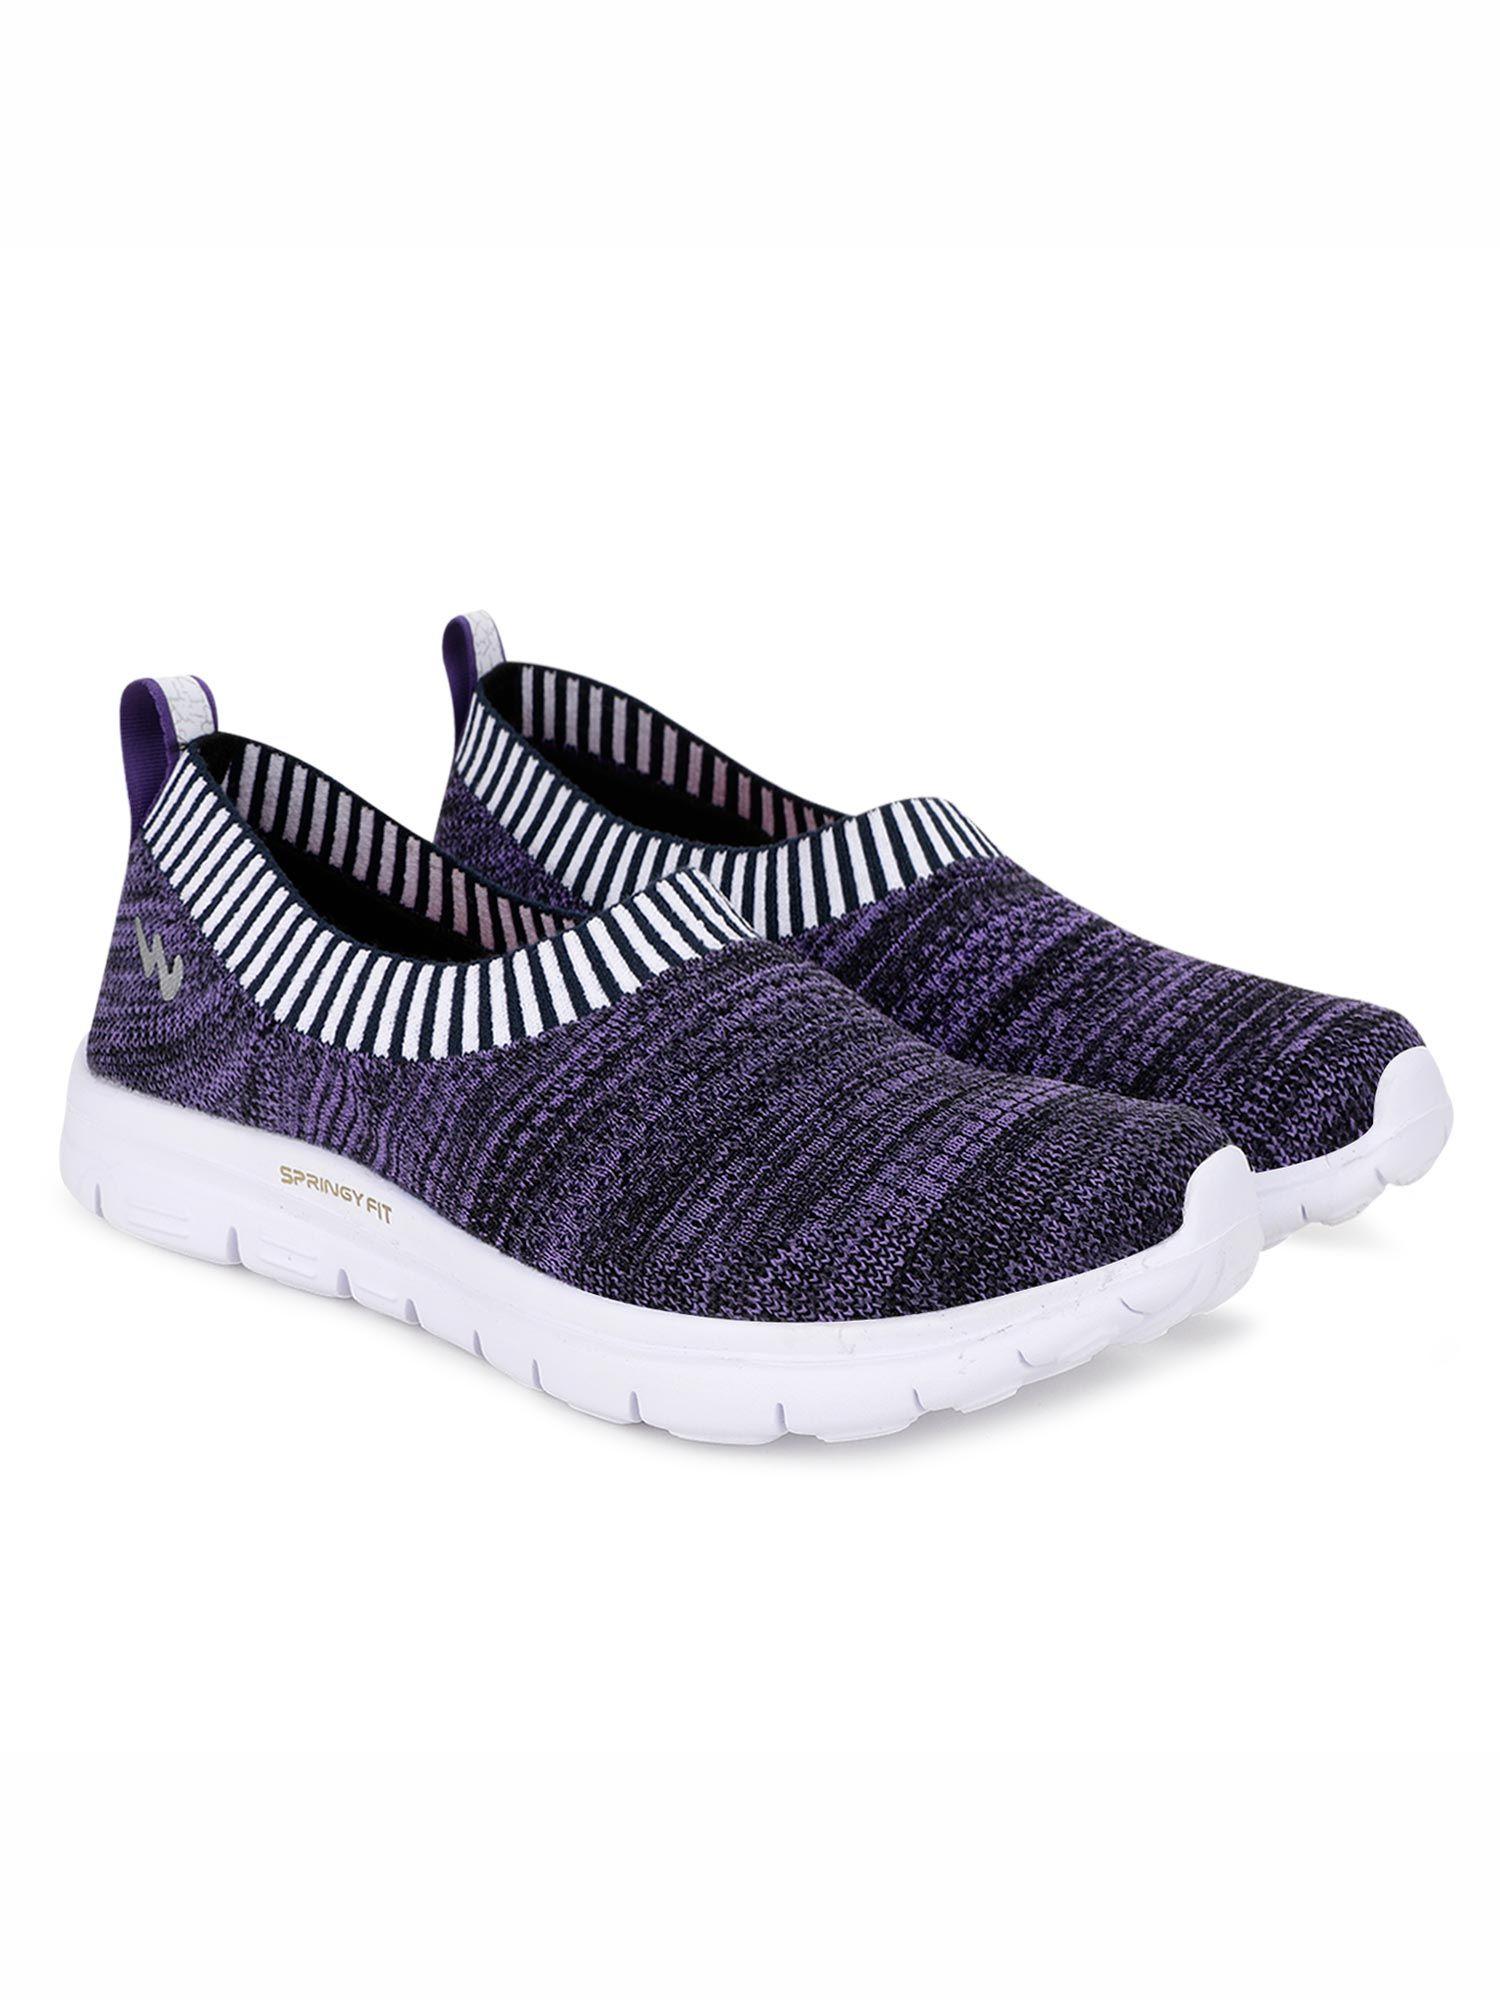 purple-walking-shoes-for-women